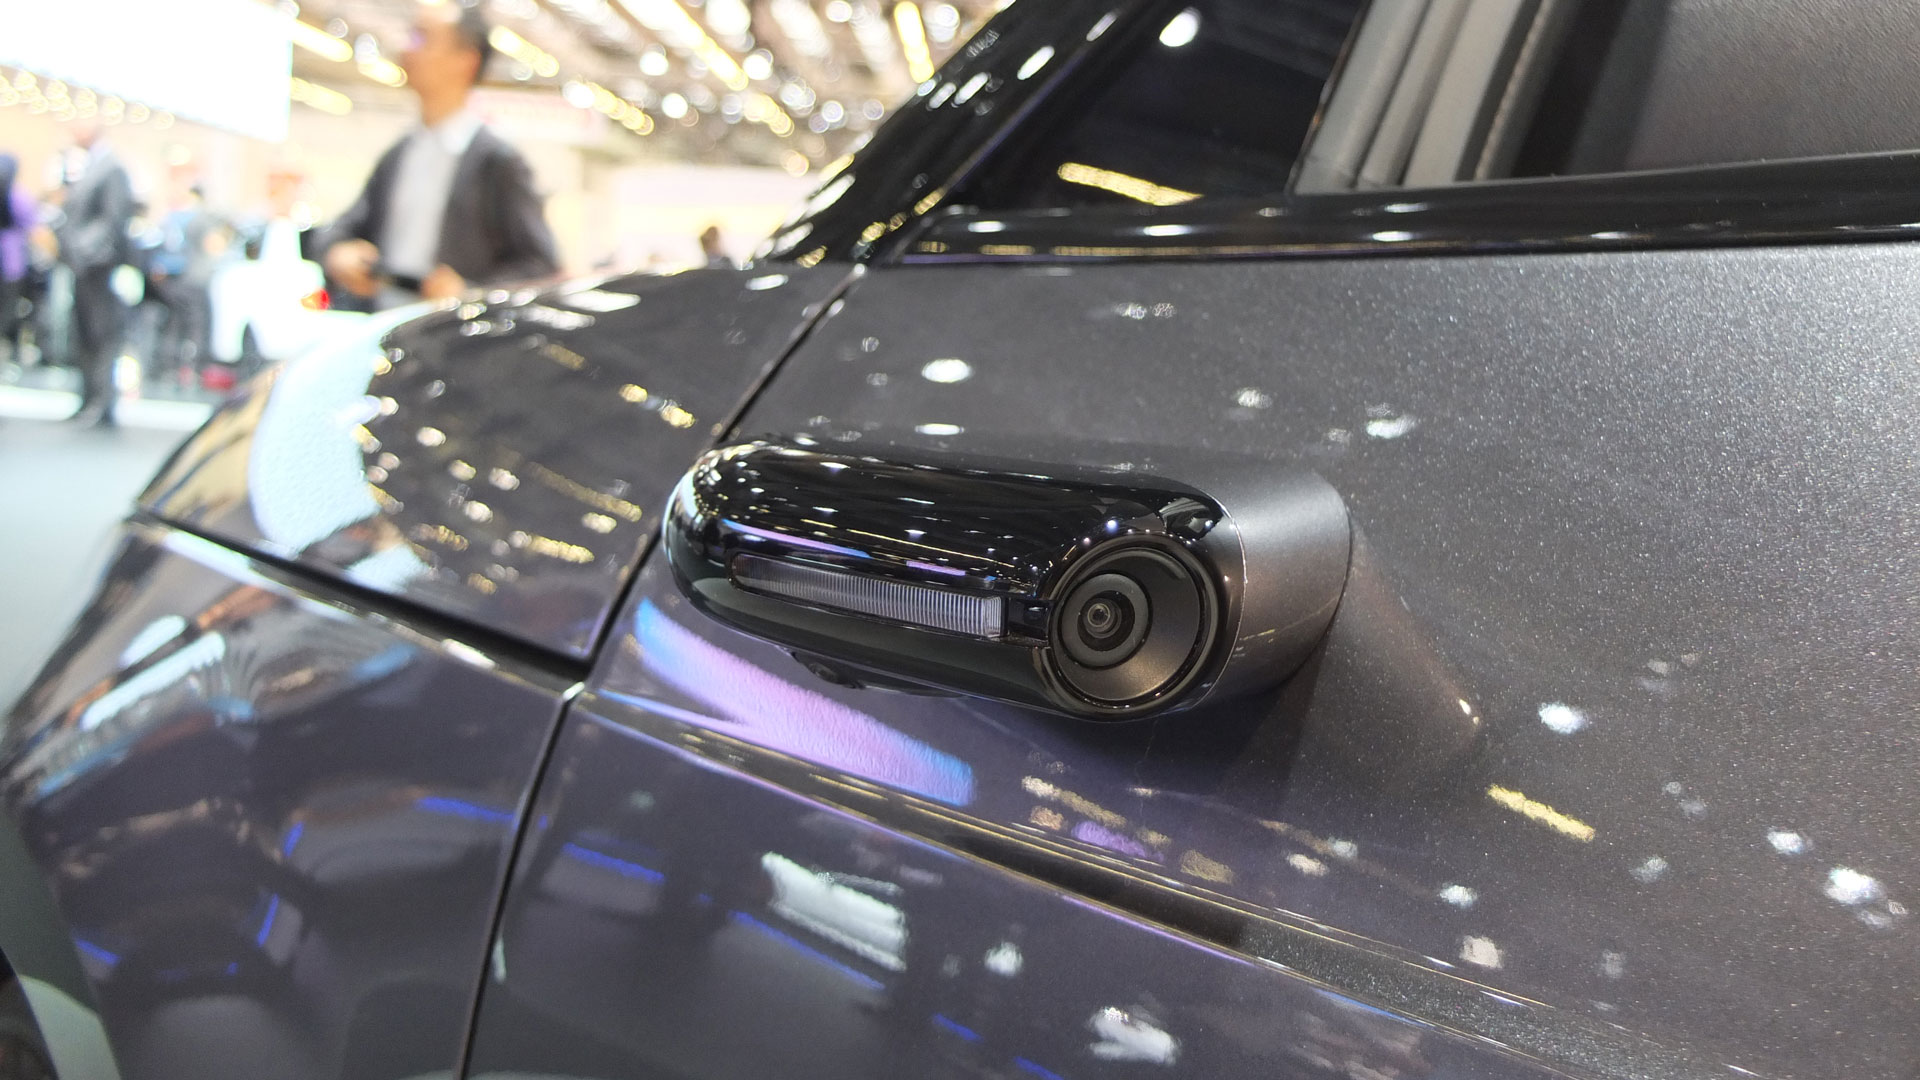 On a testé les rétroviseurs caméra des voitures : pour le meilleur